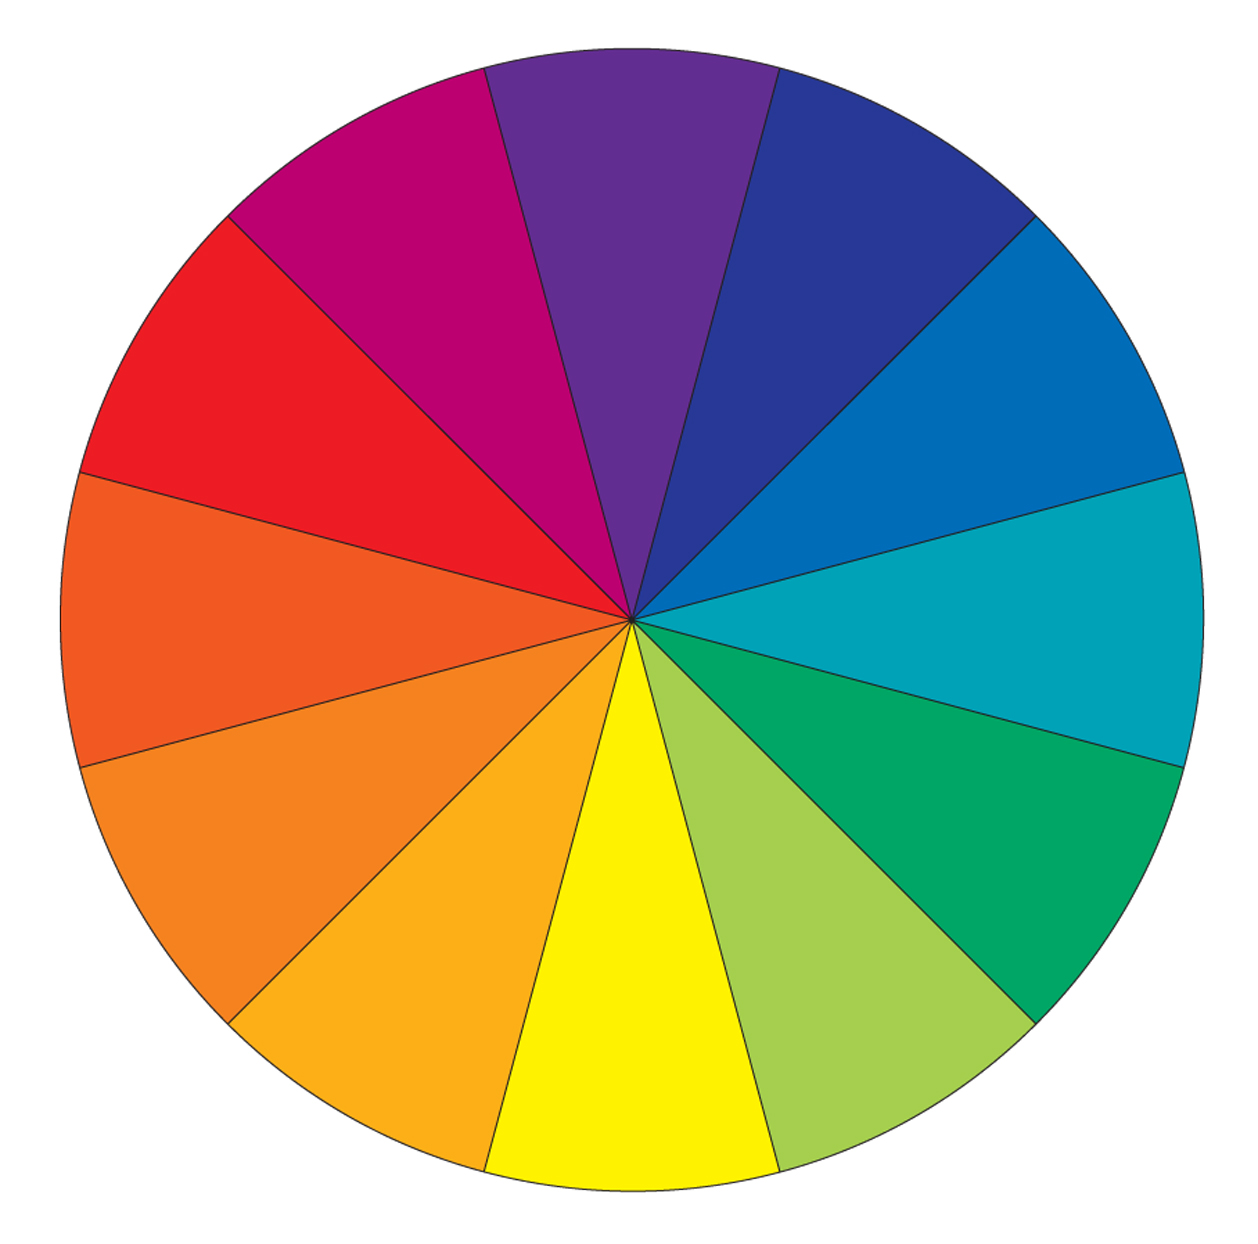 Wheel colour Color Wheel